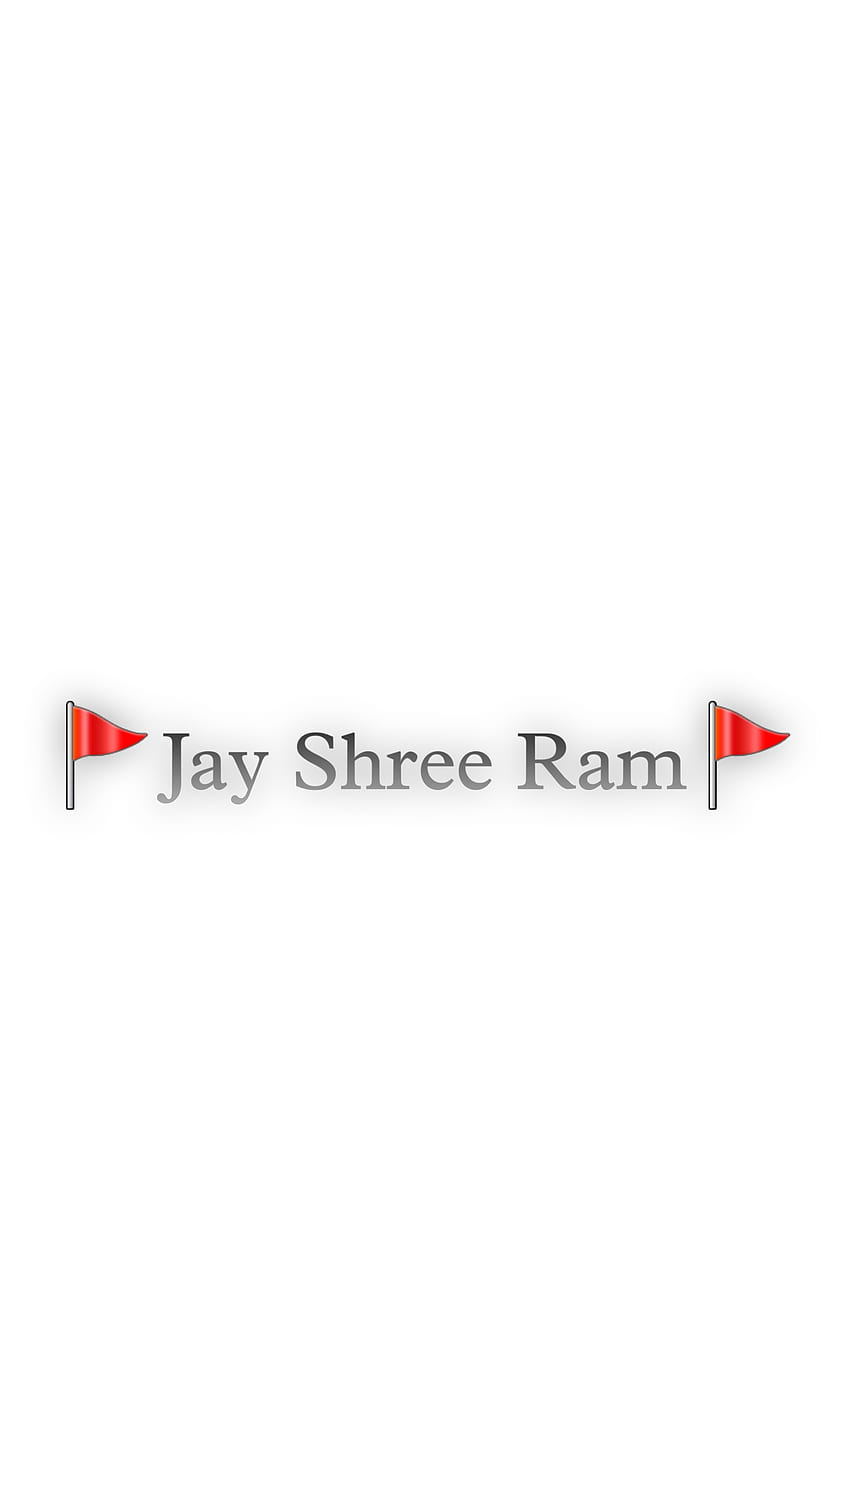 Jay shree ram, pearlkd, jayshreeram, new HD phone wallpaper